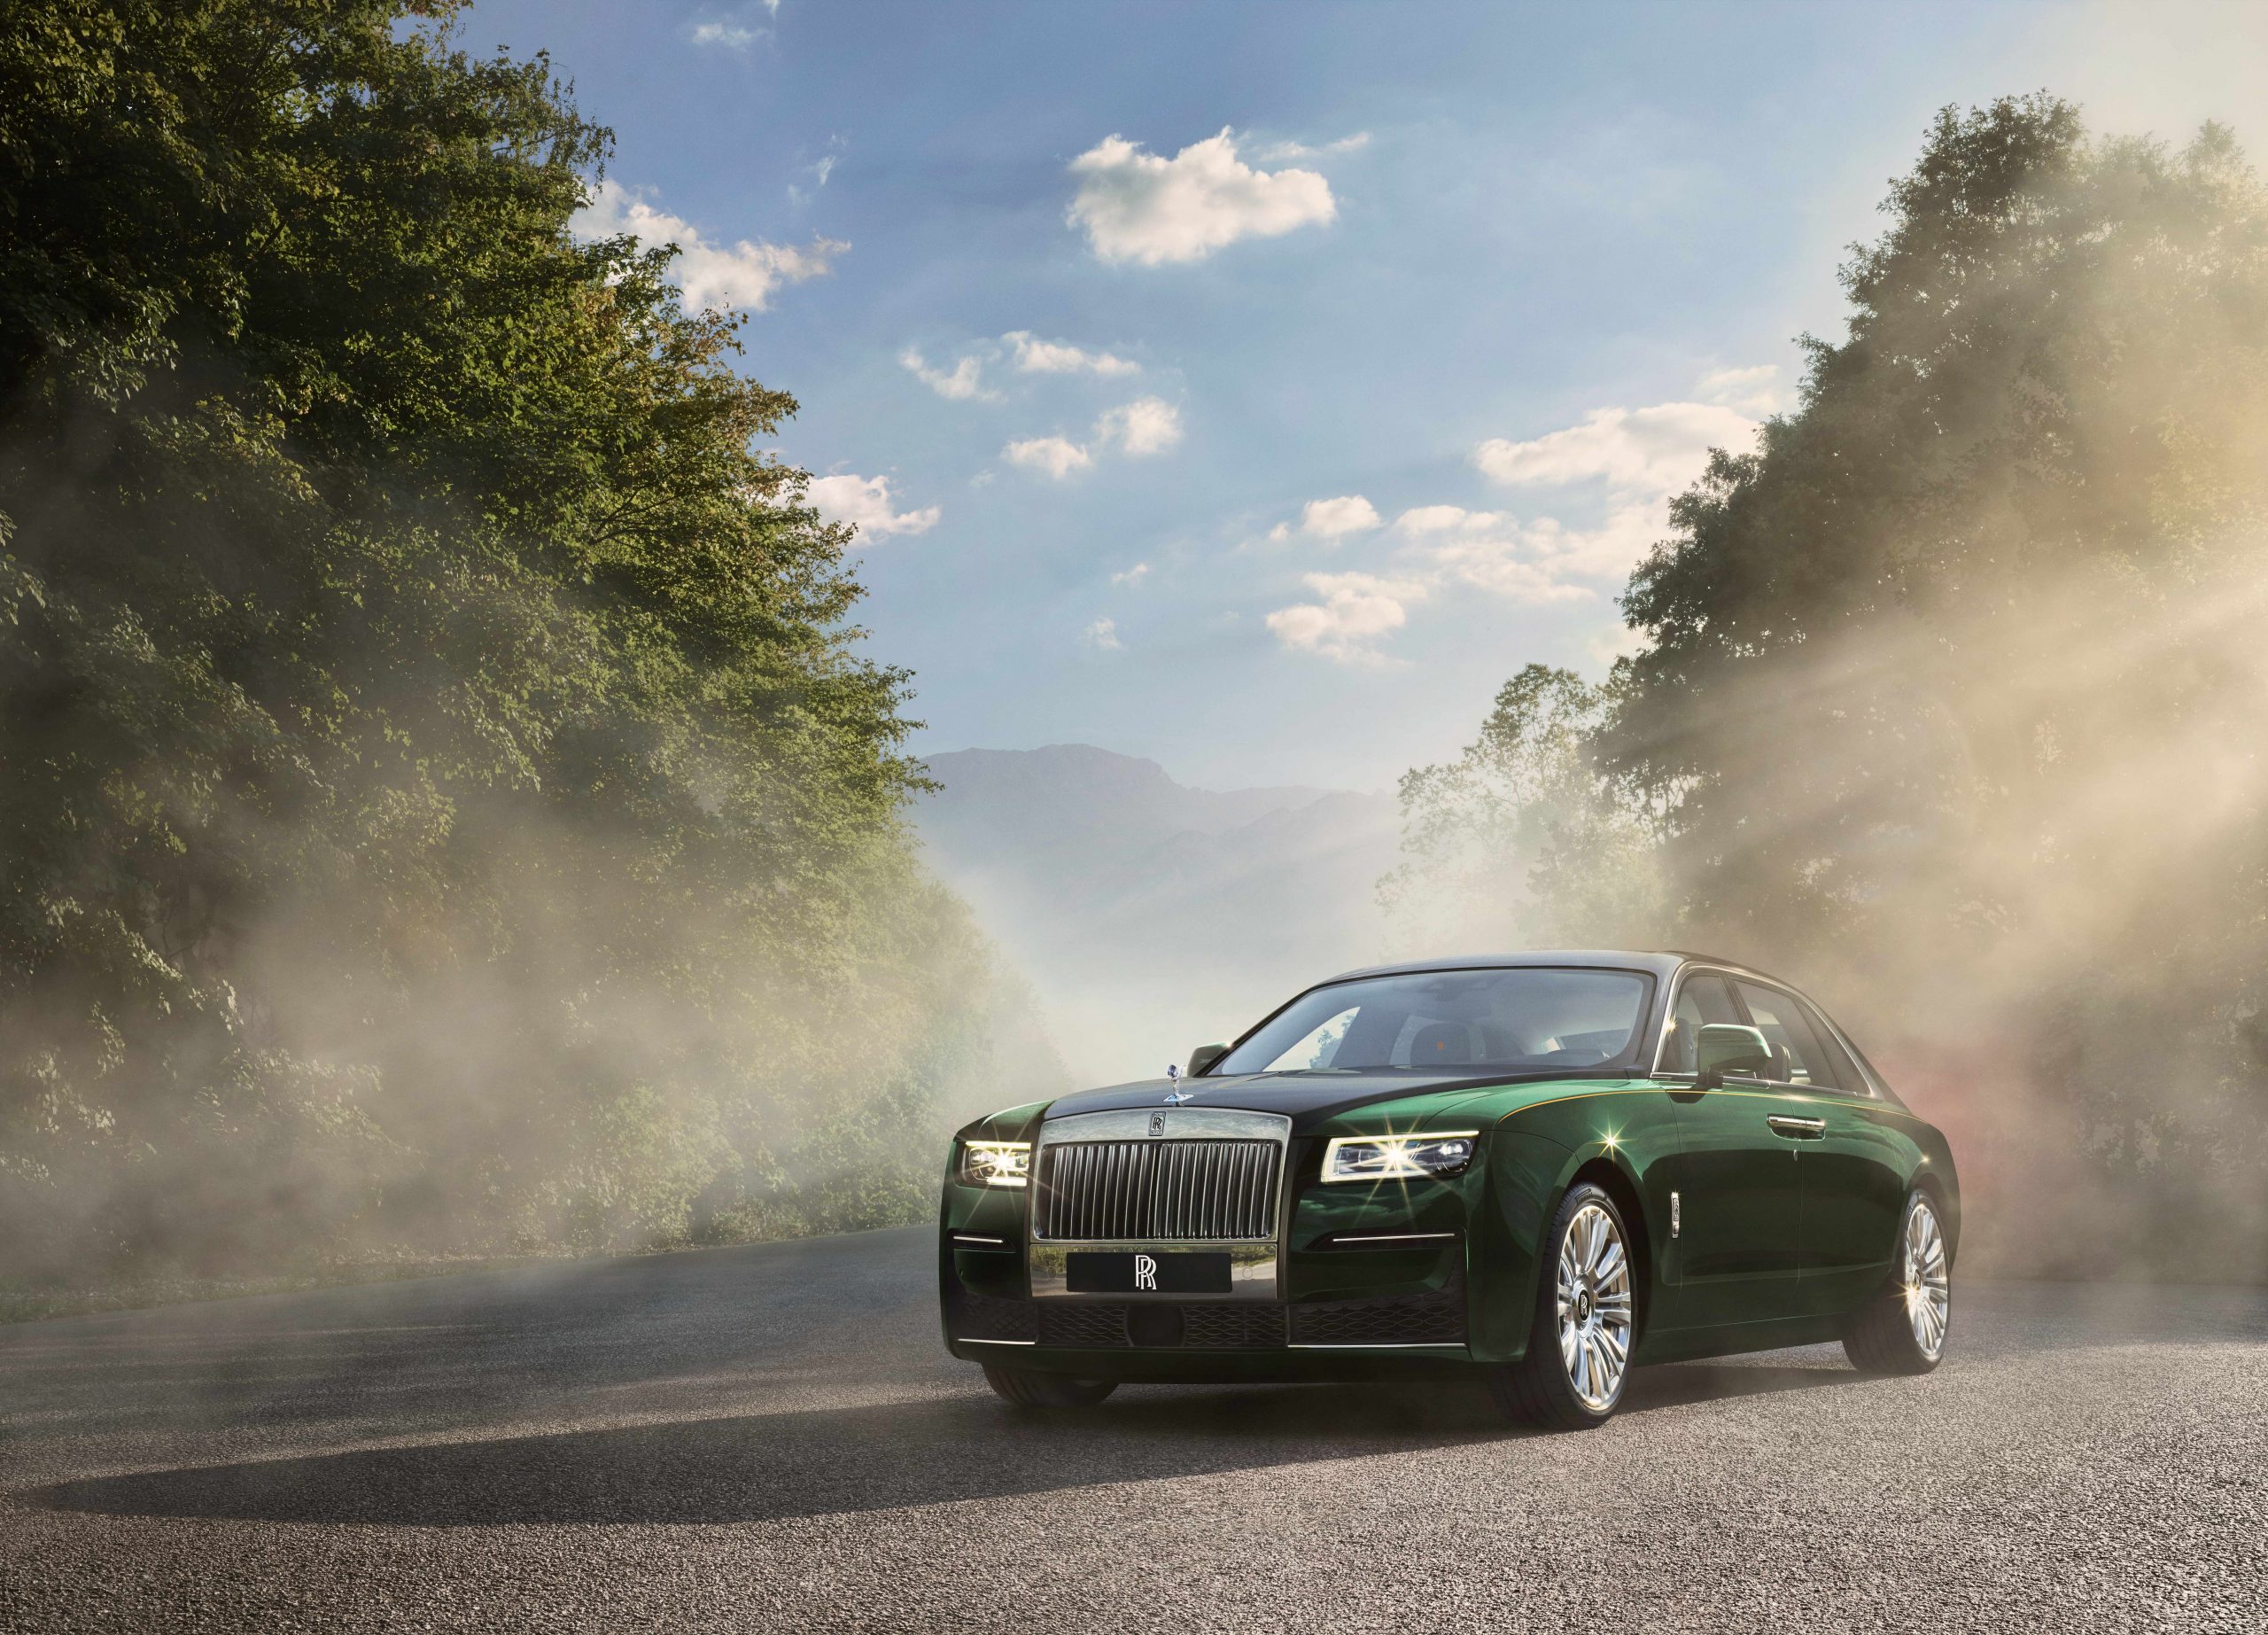 Rolls Royce Extended revealed